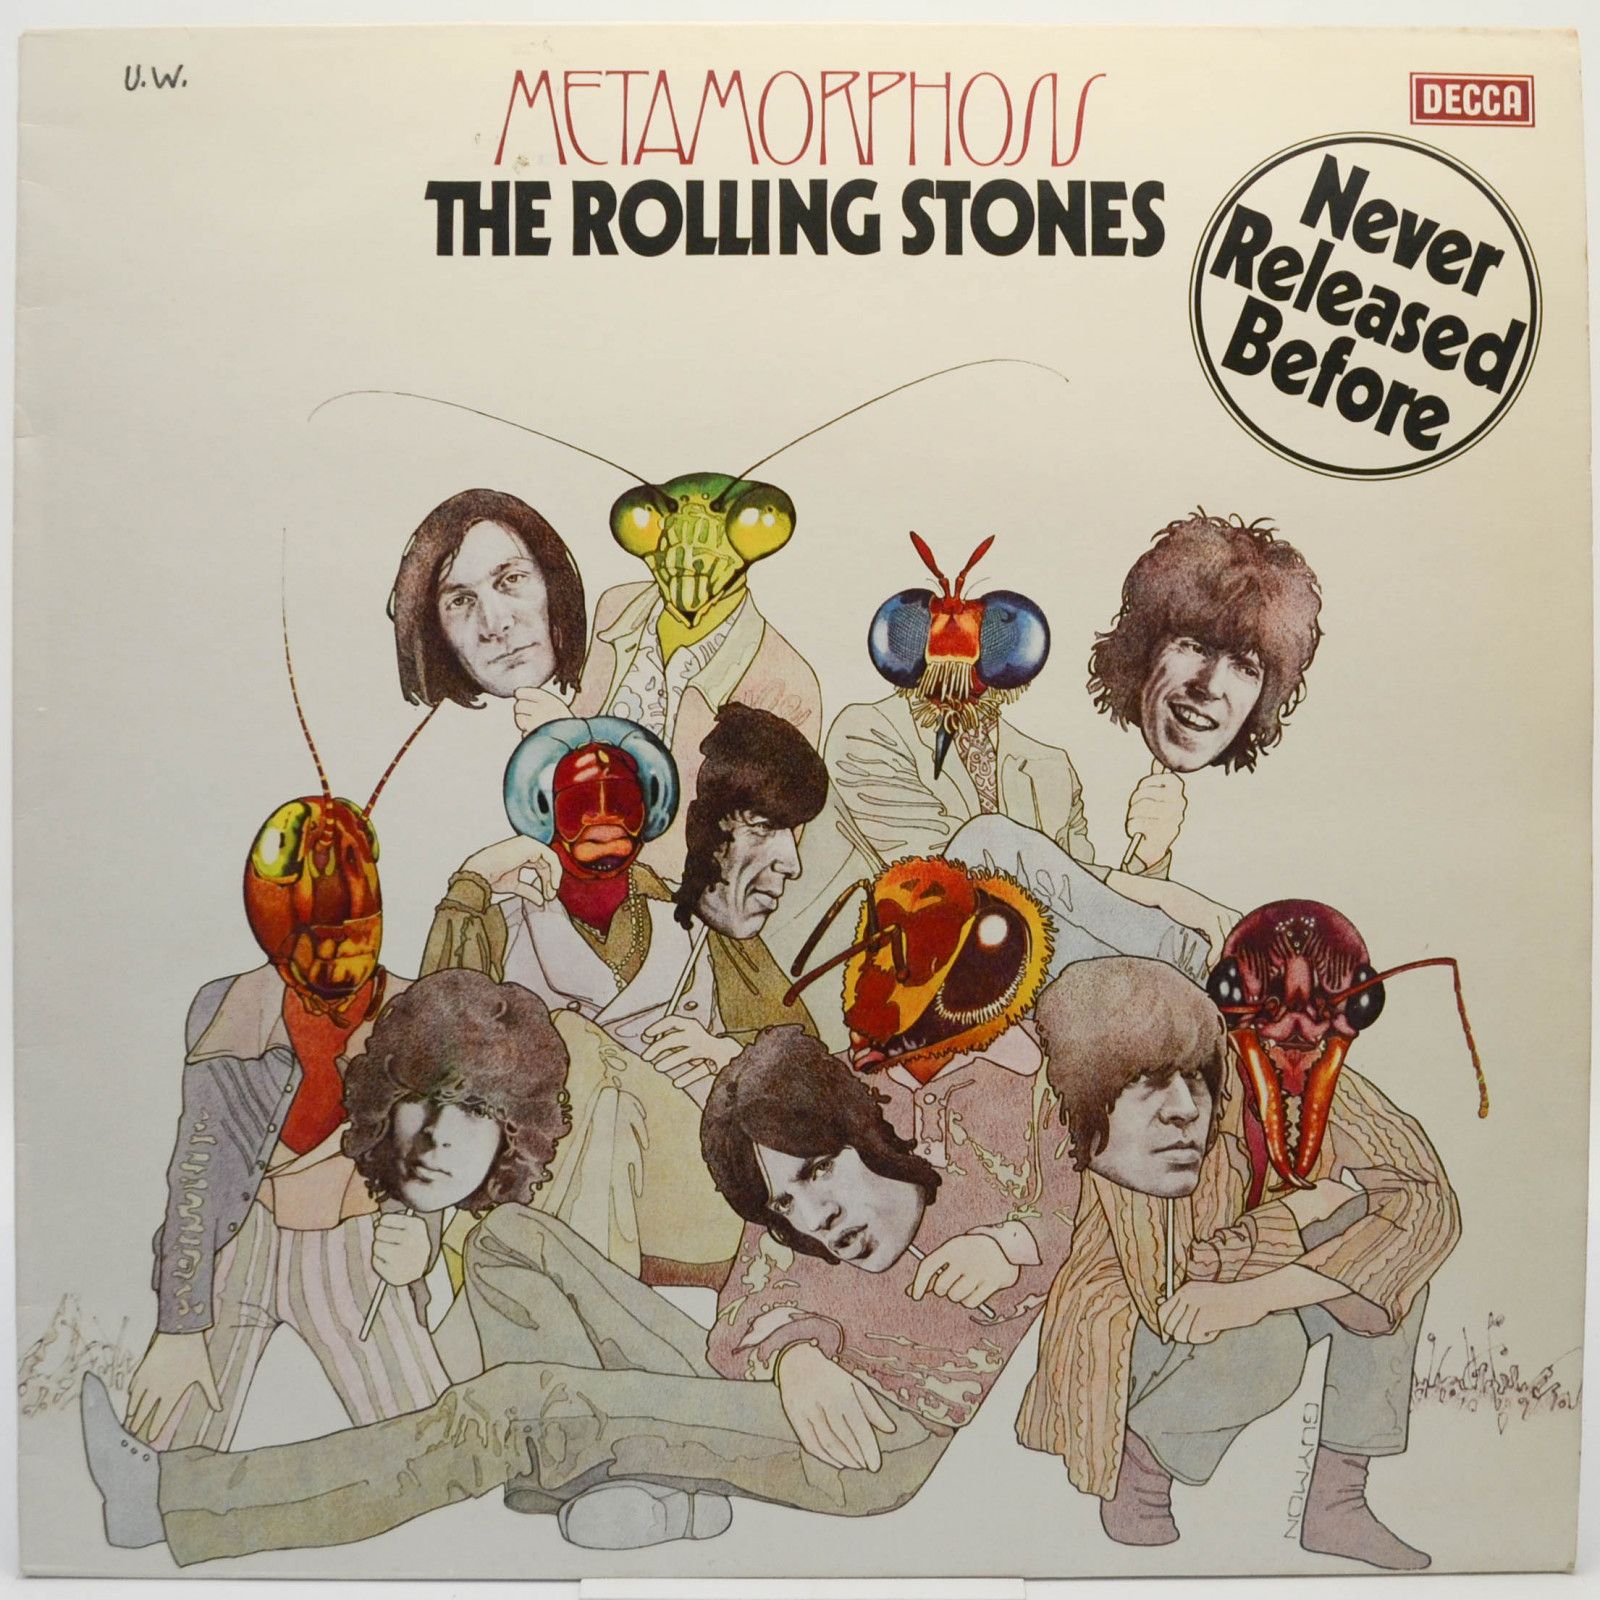 Rolling Stones — Metamorphosis, 1975